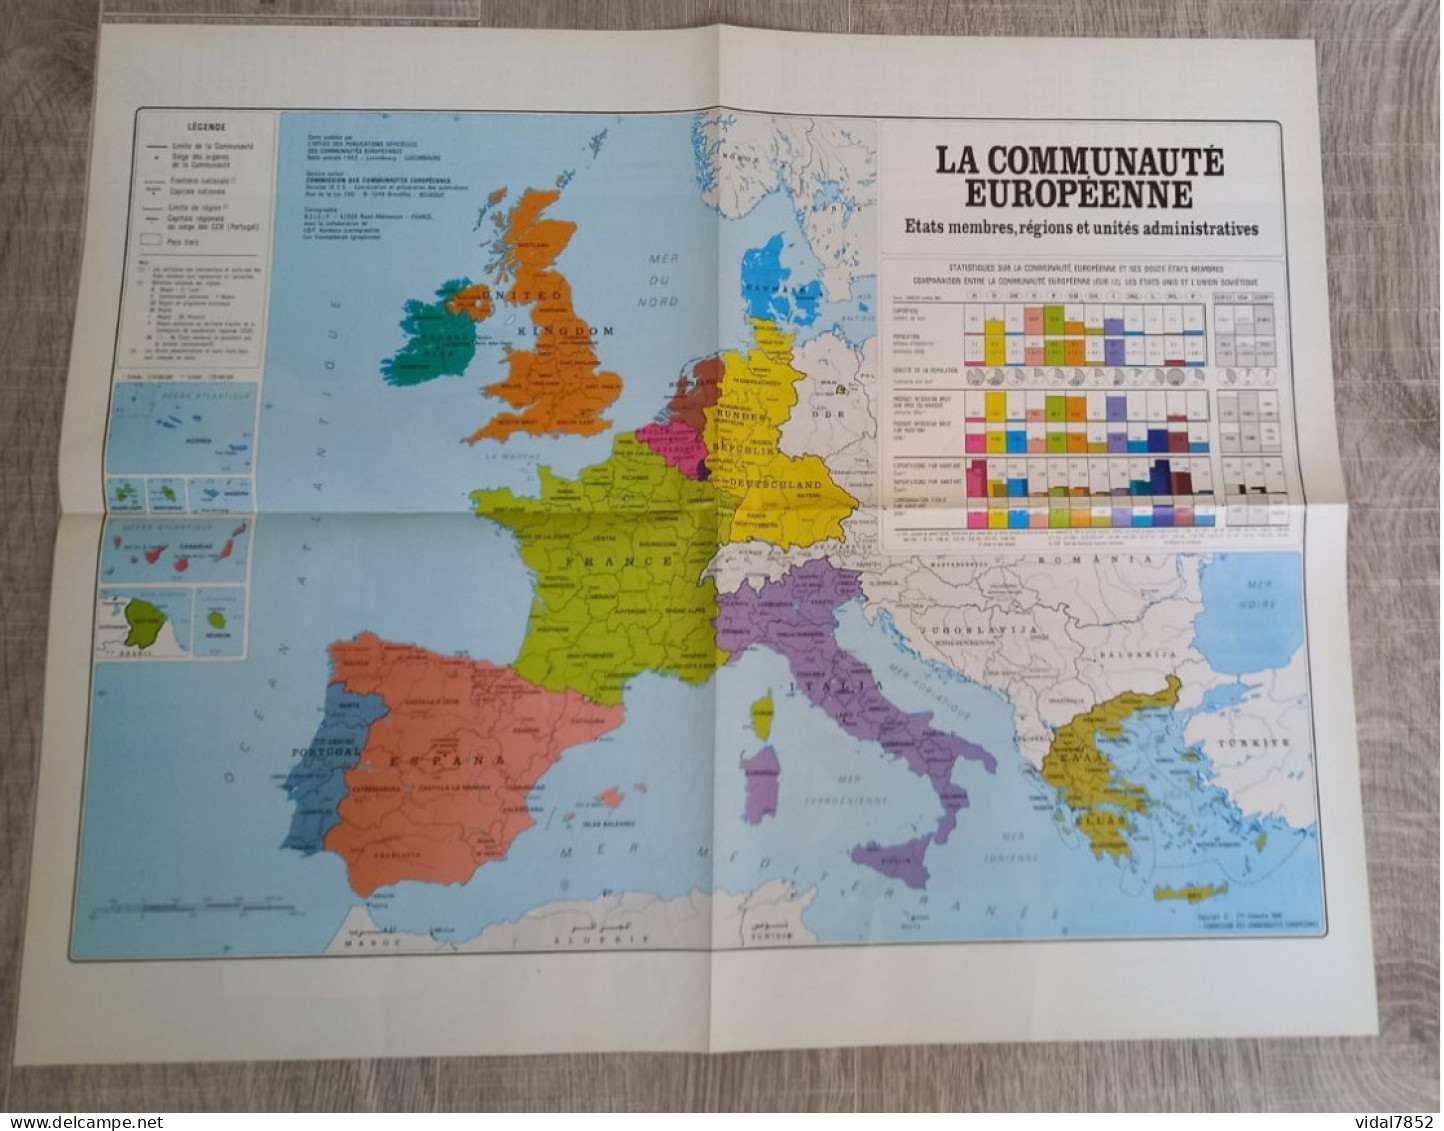 Calendrier-Almanach Des P.T.T 1991-Poster Intérieur Communauté Européenne--Tom Jerry Département AIN-01-Référence 325 - Big : 1991-00